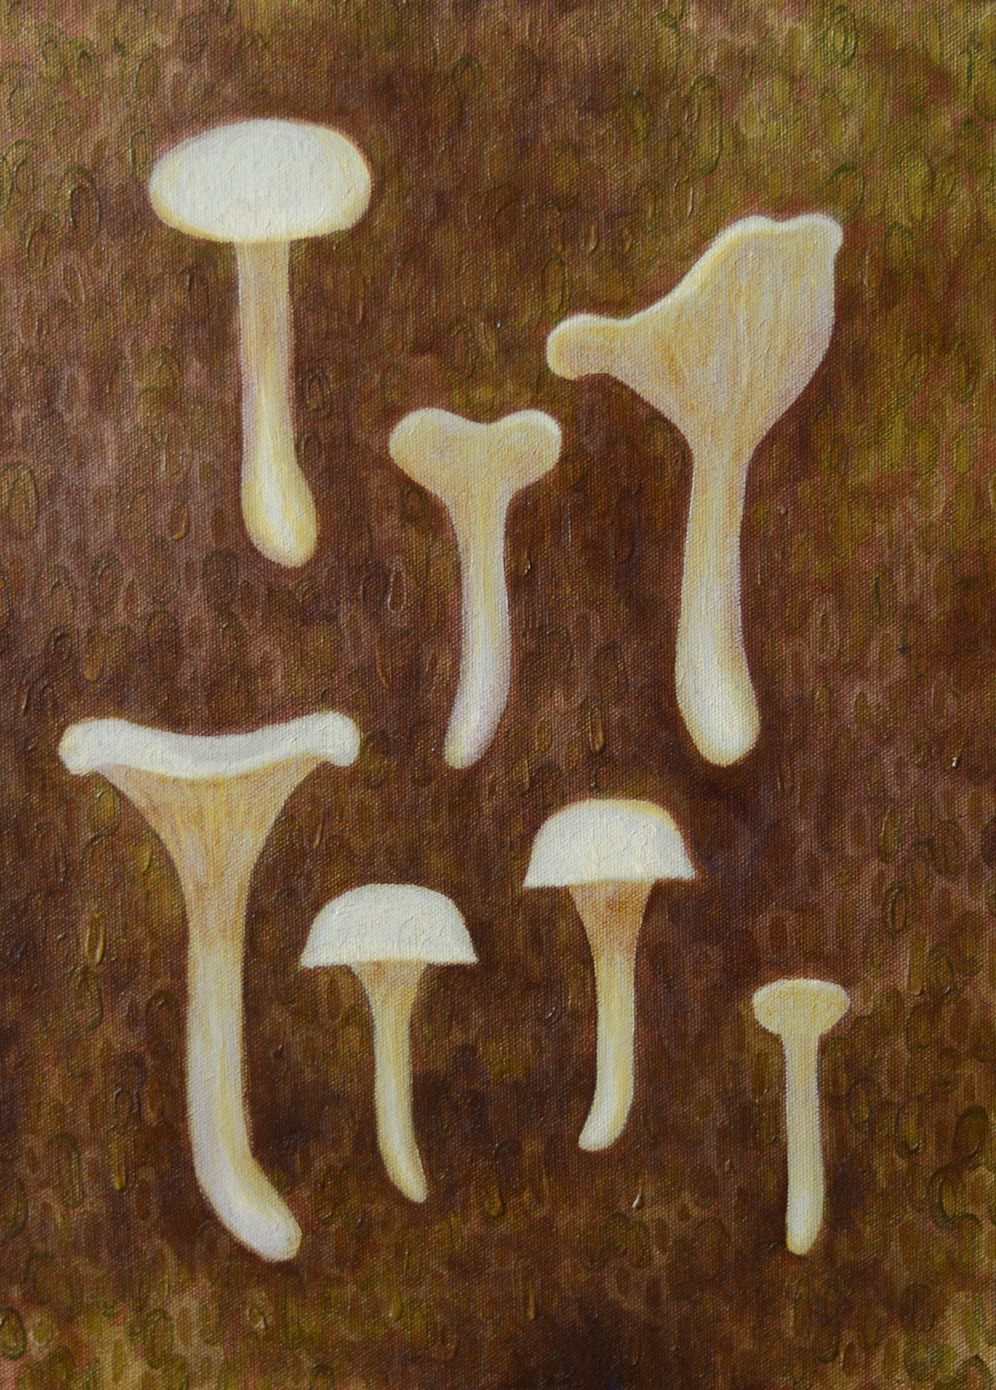 Image may contain: mushroom